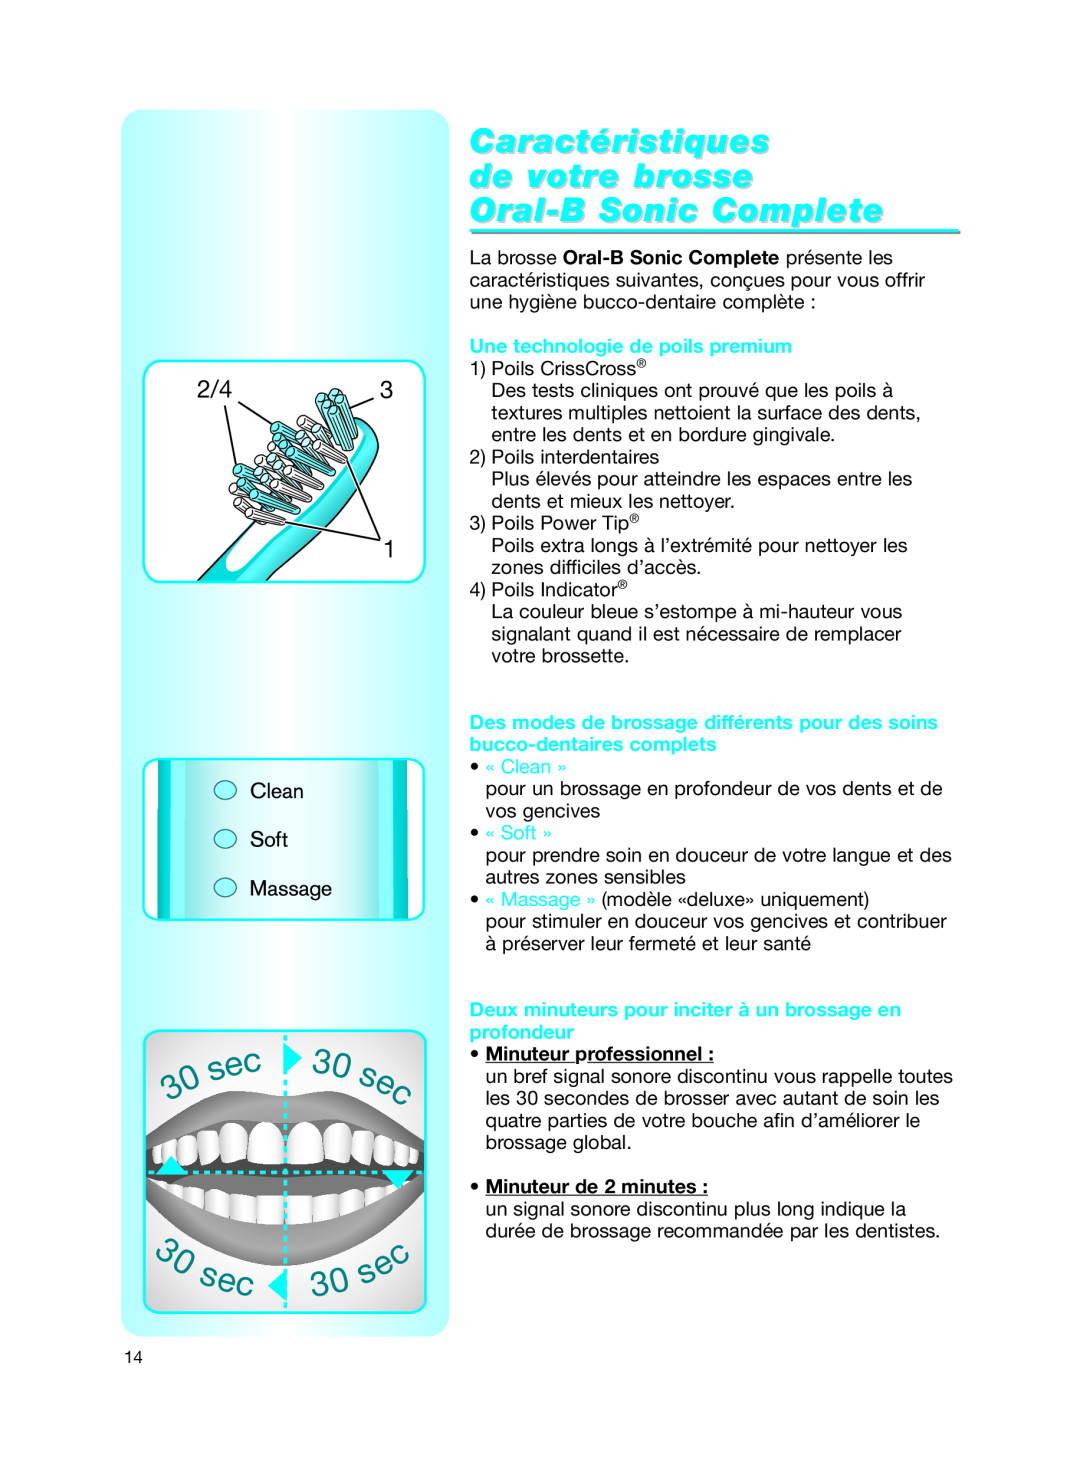 Braun Caractéristiques de votre brosse Oral-B Sonic Complete, Une technologie de poils premium, « Clean », « Soft » 